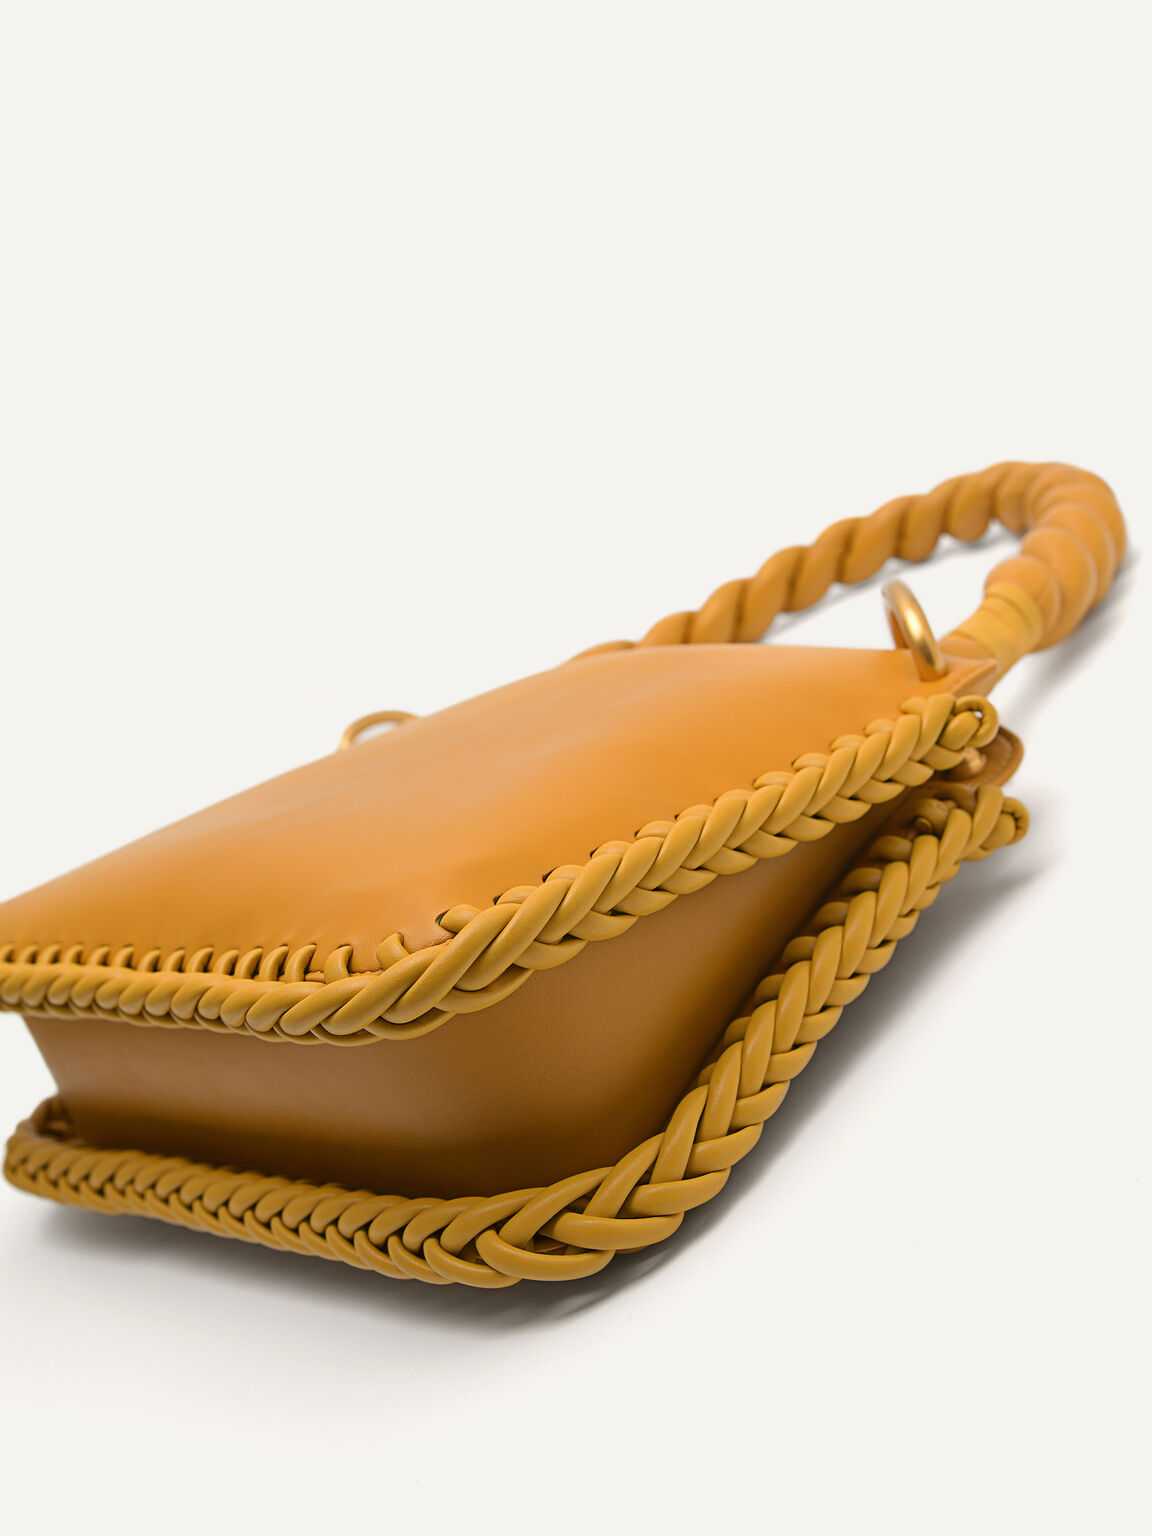 Veranda Shoulder Bag, Mustard